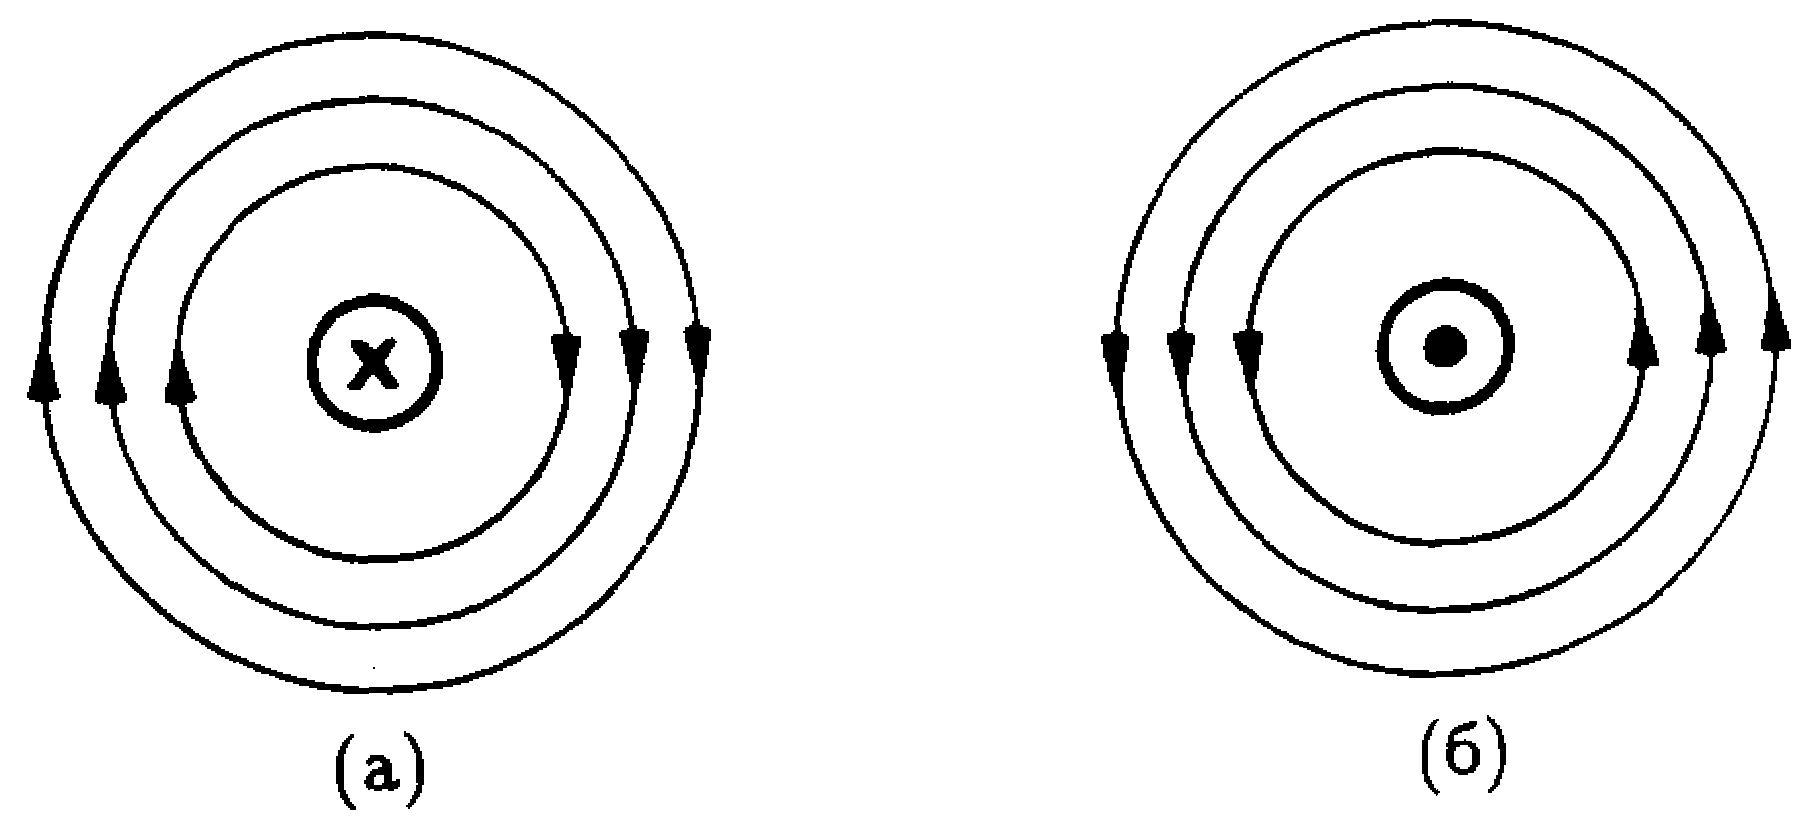 Направление магнитных линий по часовой стрелке. Линии магнитной индукции прямого проводника. Линии магнитного поля проводника с током. Направление магнитного поля вокруг проводника. Направление линий магнитного поля прямого проводника с током.